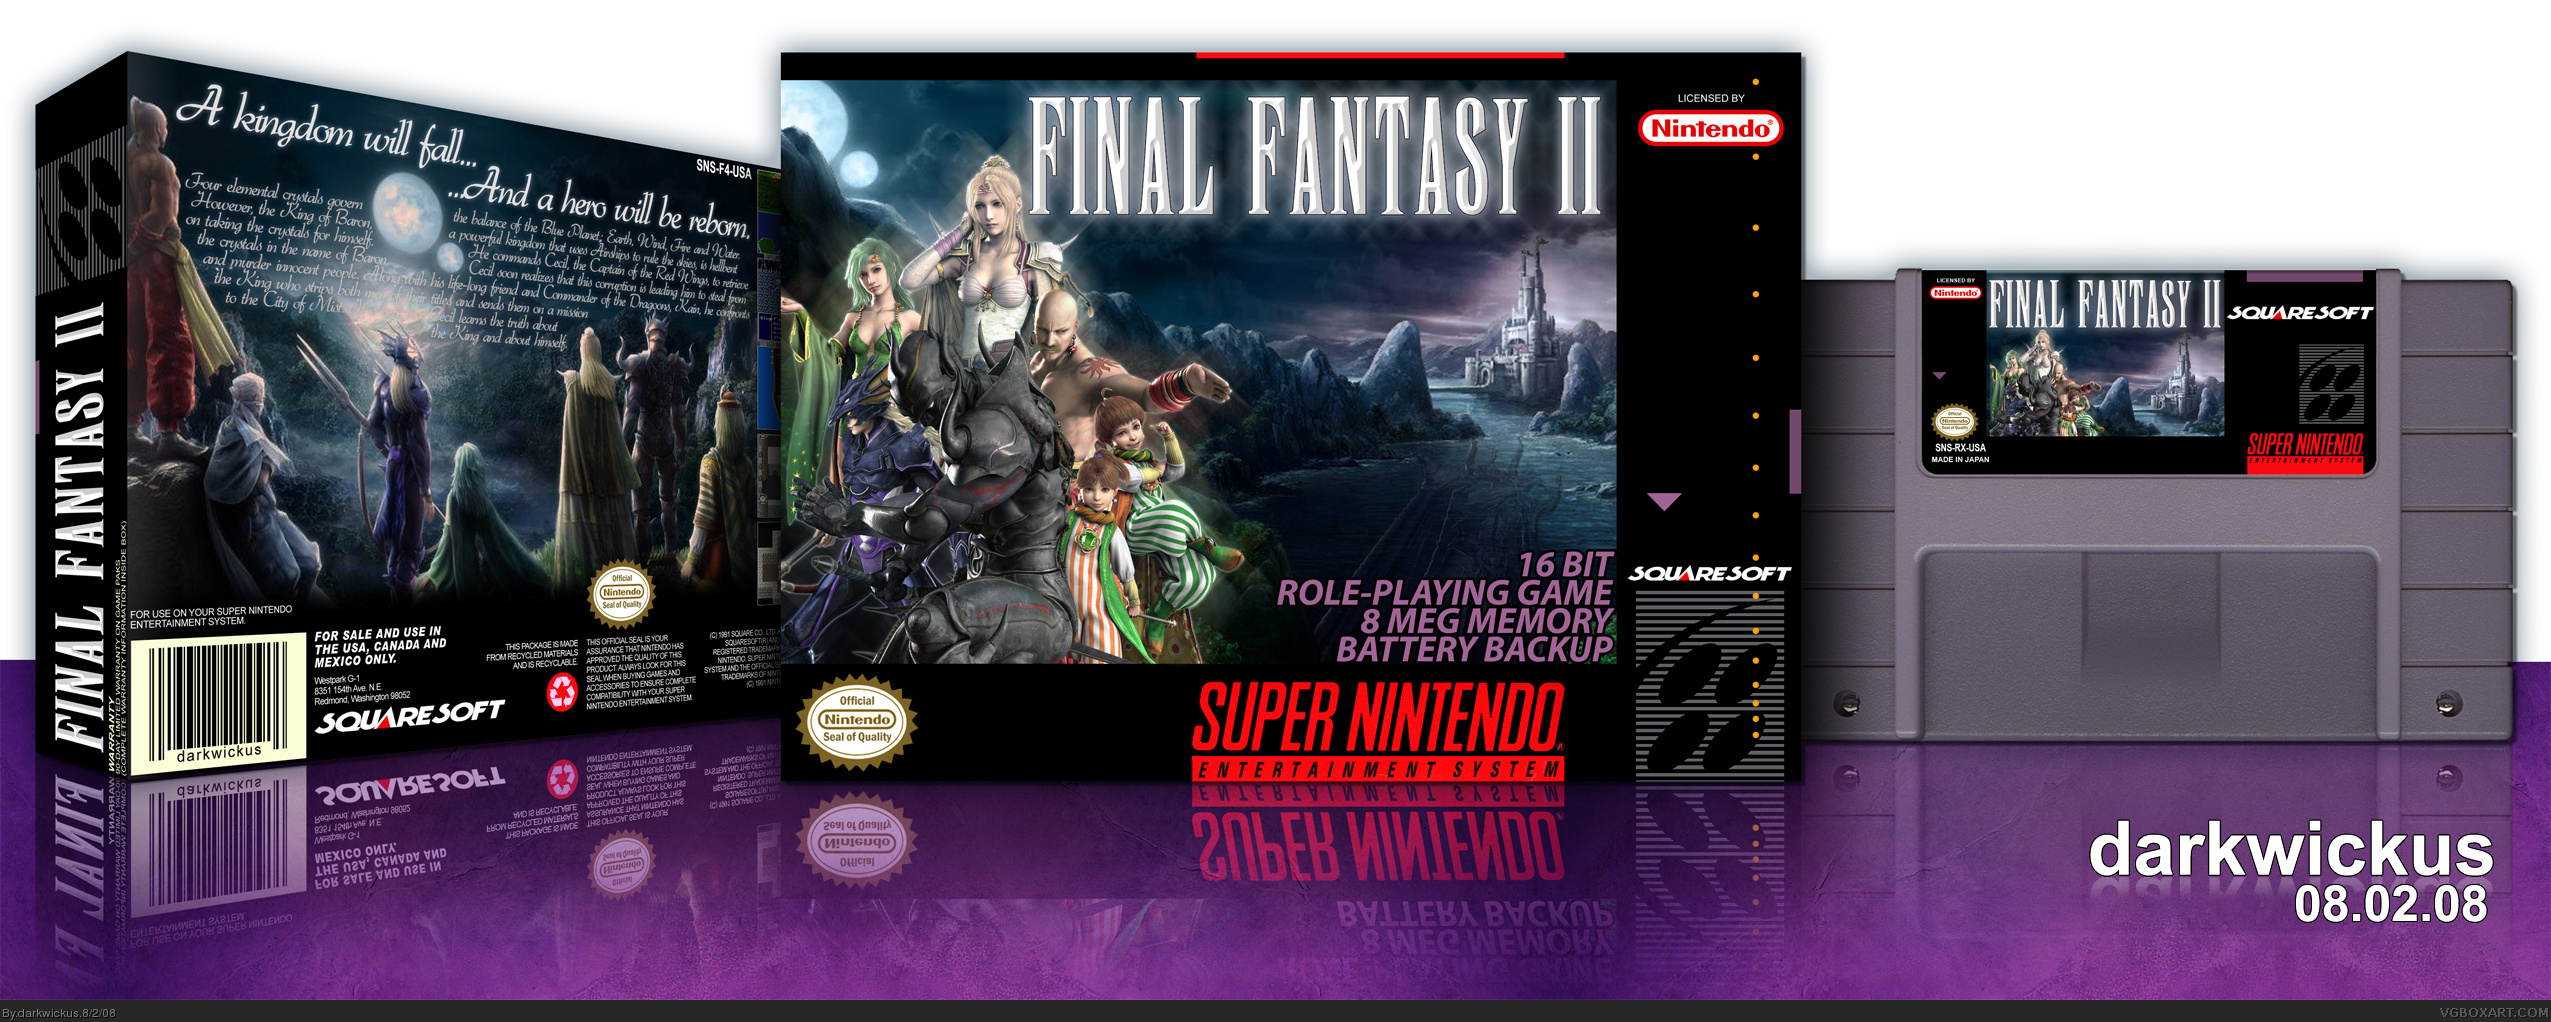 Final Fantasy II box cover